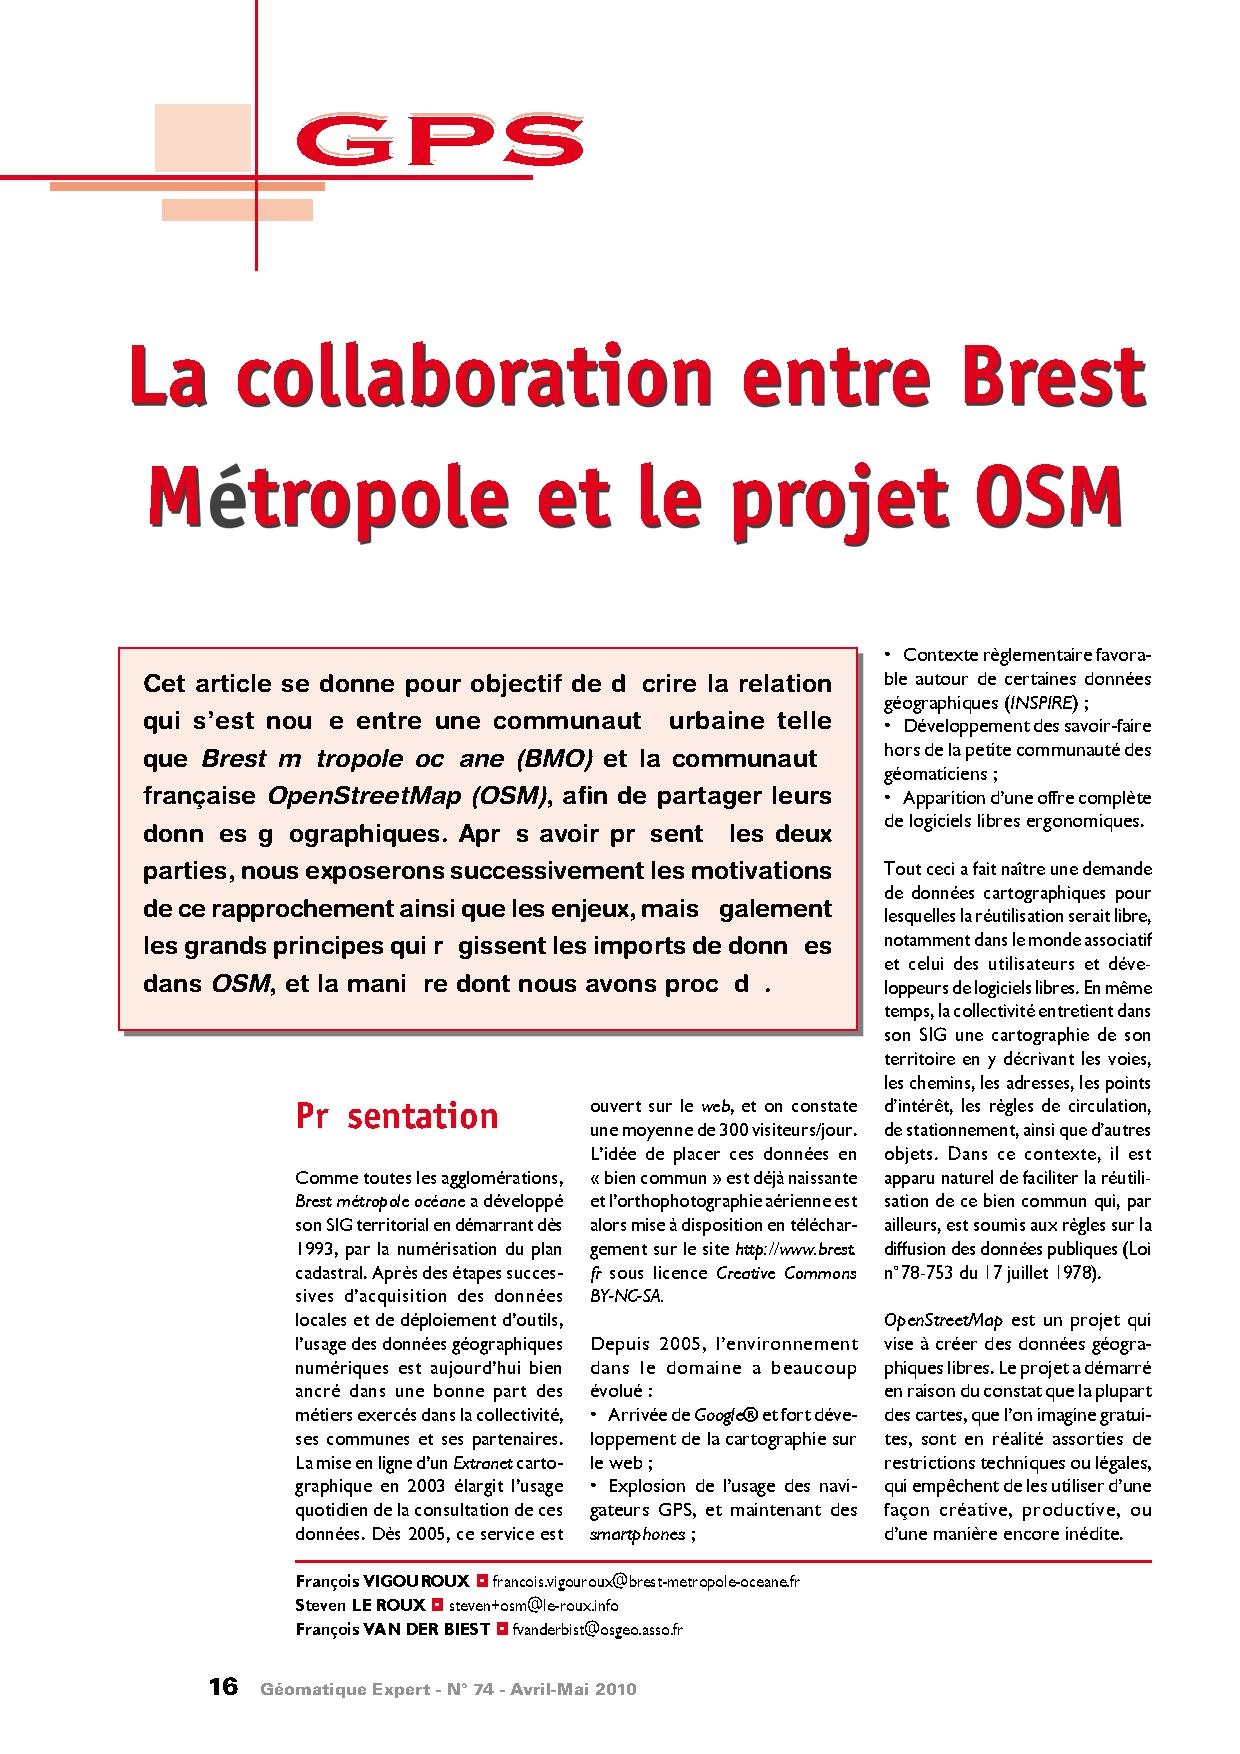 2010-06 Geomatique Expert Cartes ouvertes pour OSM a Brest.pdf